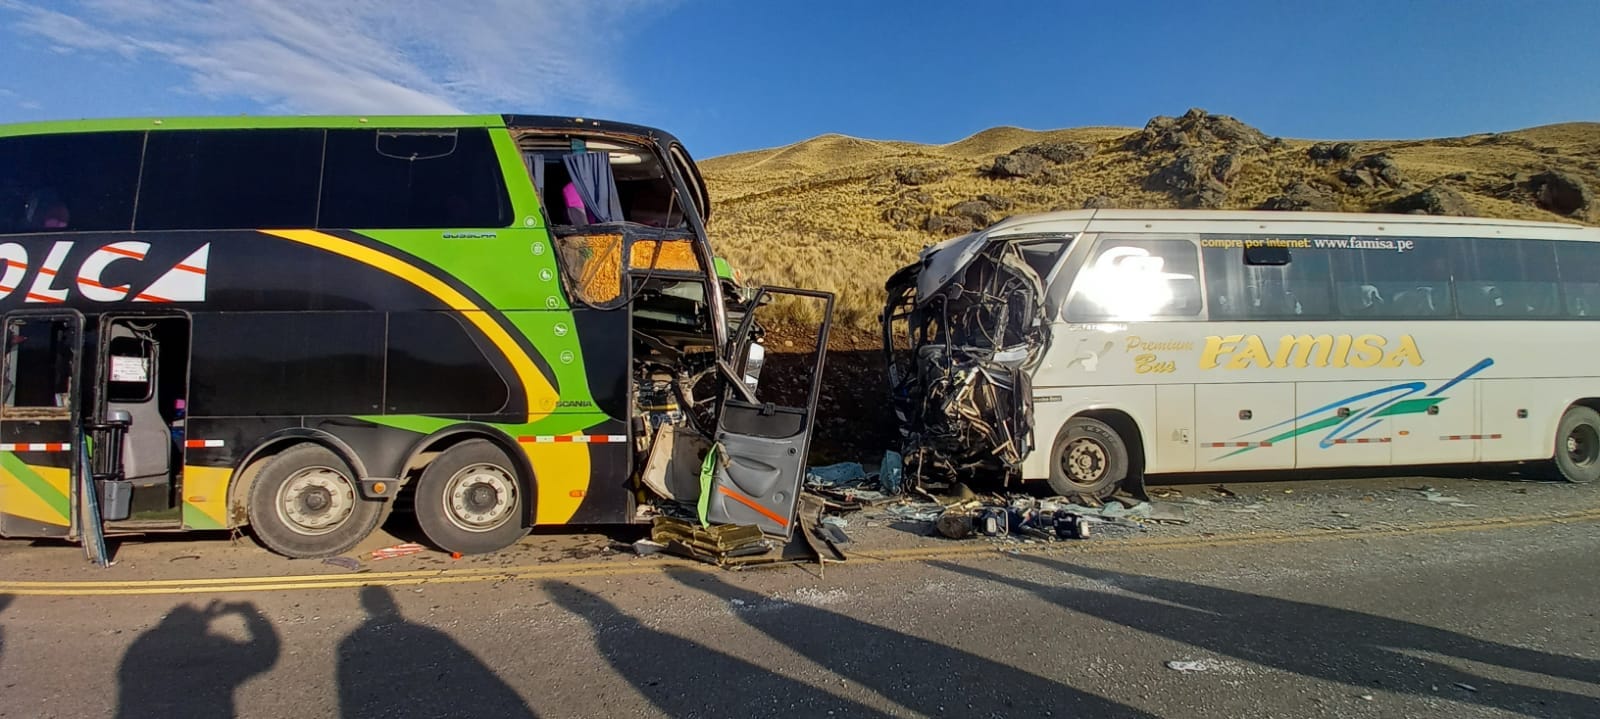 AQUÍ la relación de los 5 fallecidos y 28 heridos del choque de los buses de las empresas Colca y Famisa en la ruta Espinar – Arequipa